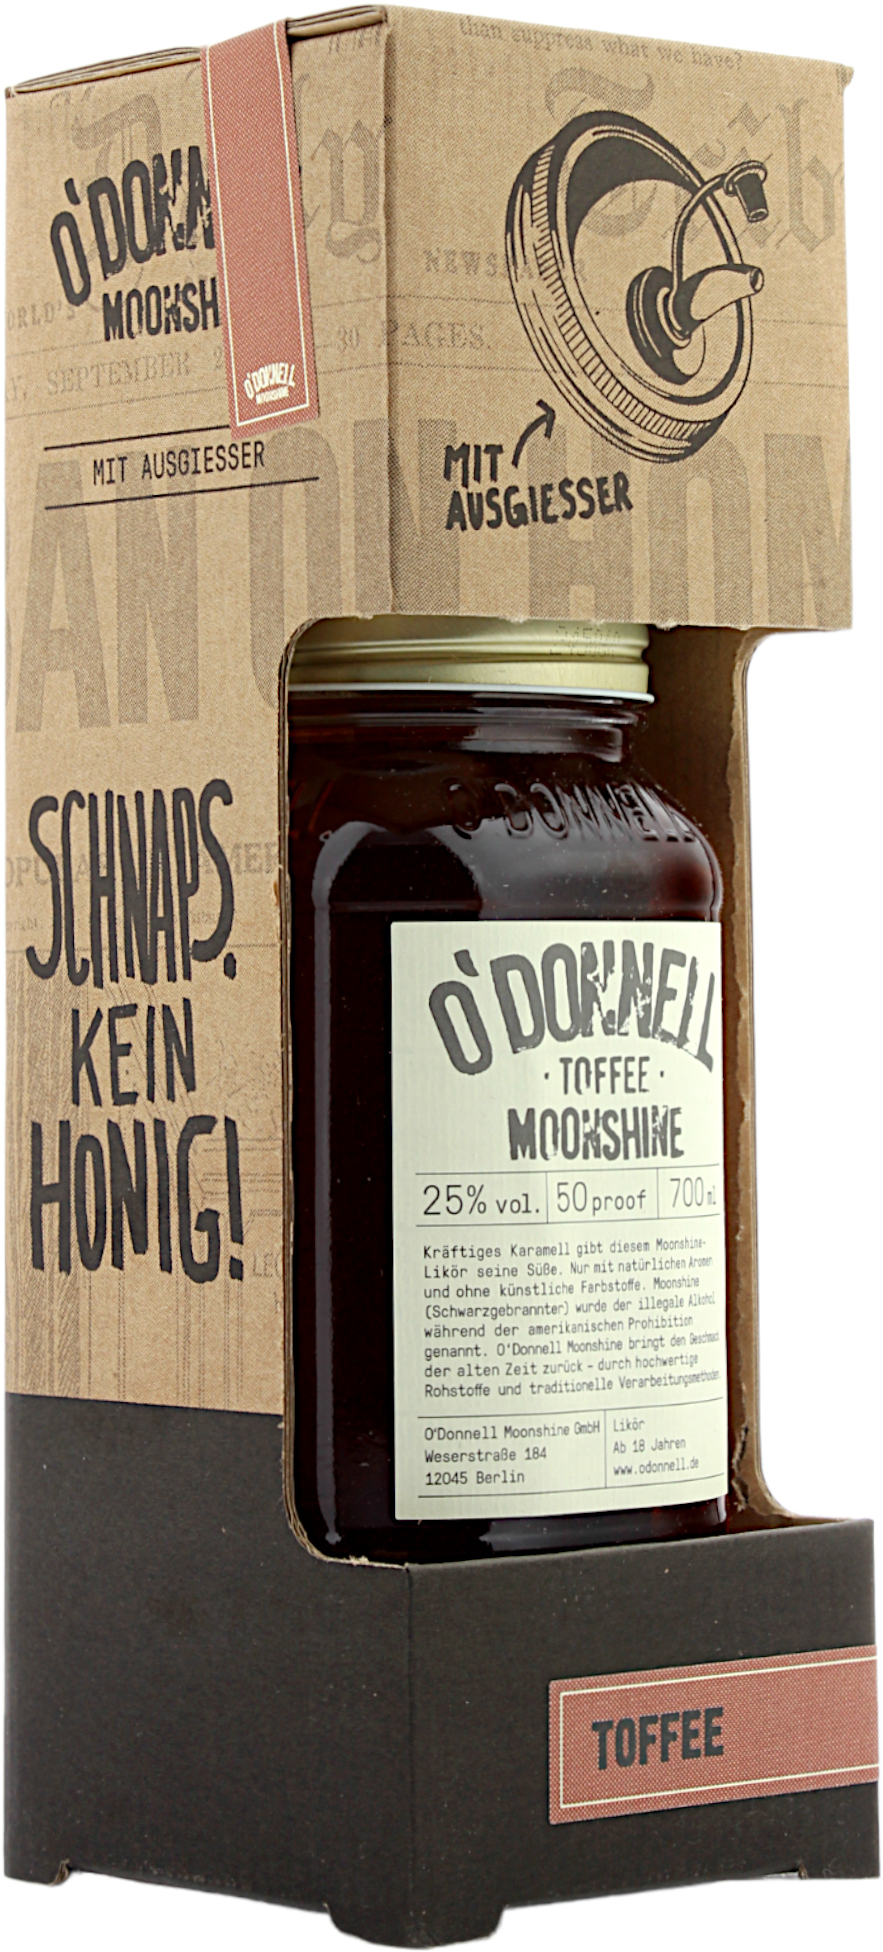 Kombi O'Donnell Moonshine Toffee mit Ausgießer 25.0% 0,7l